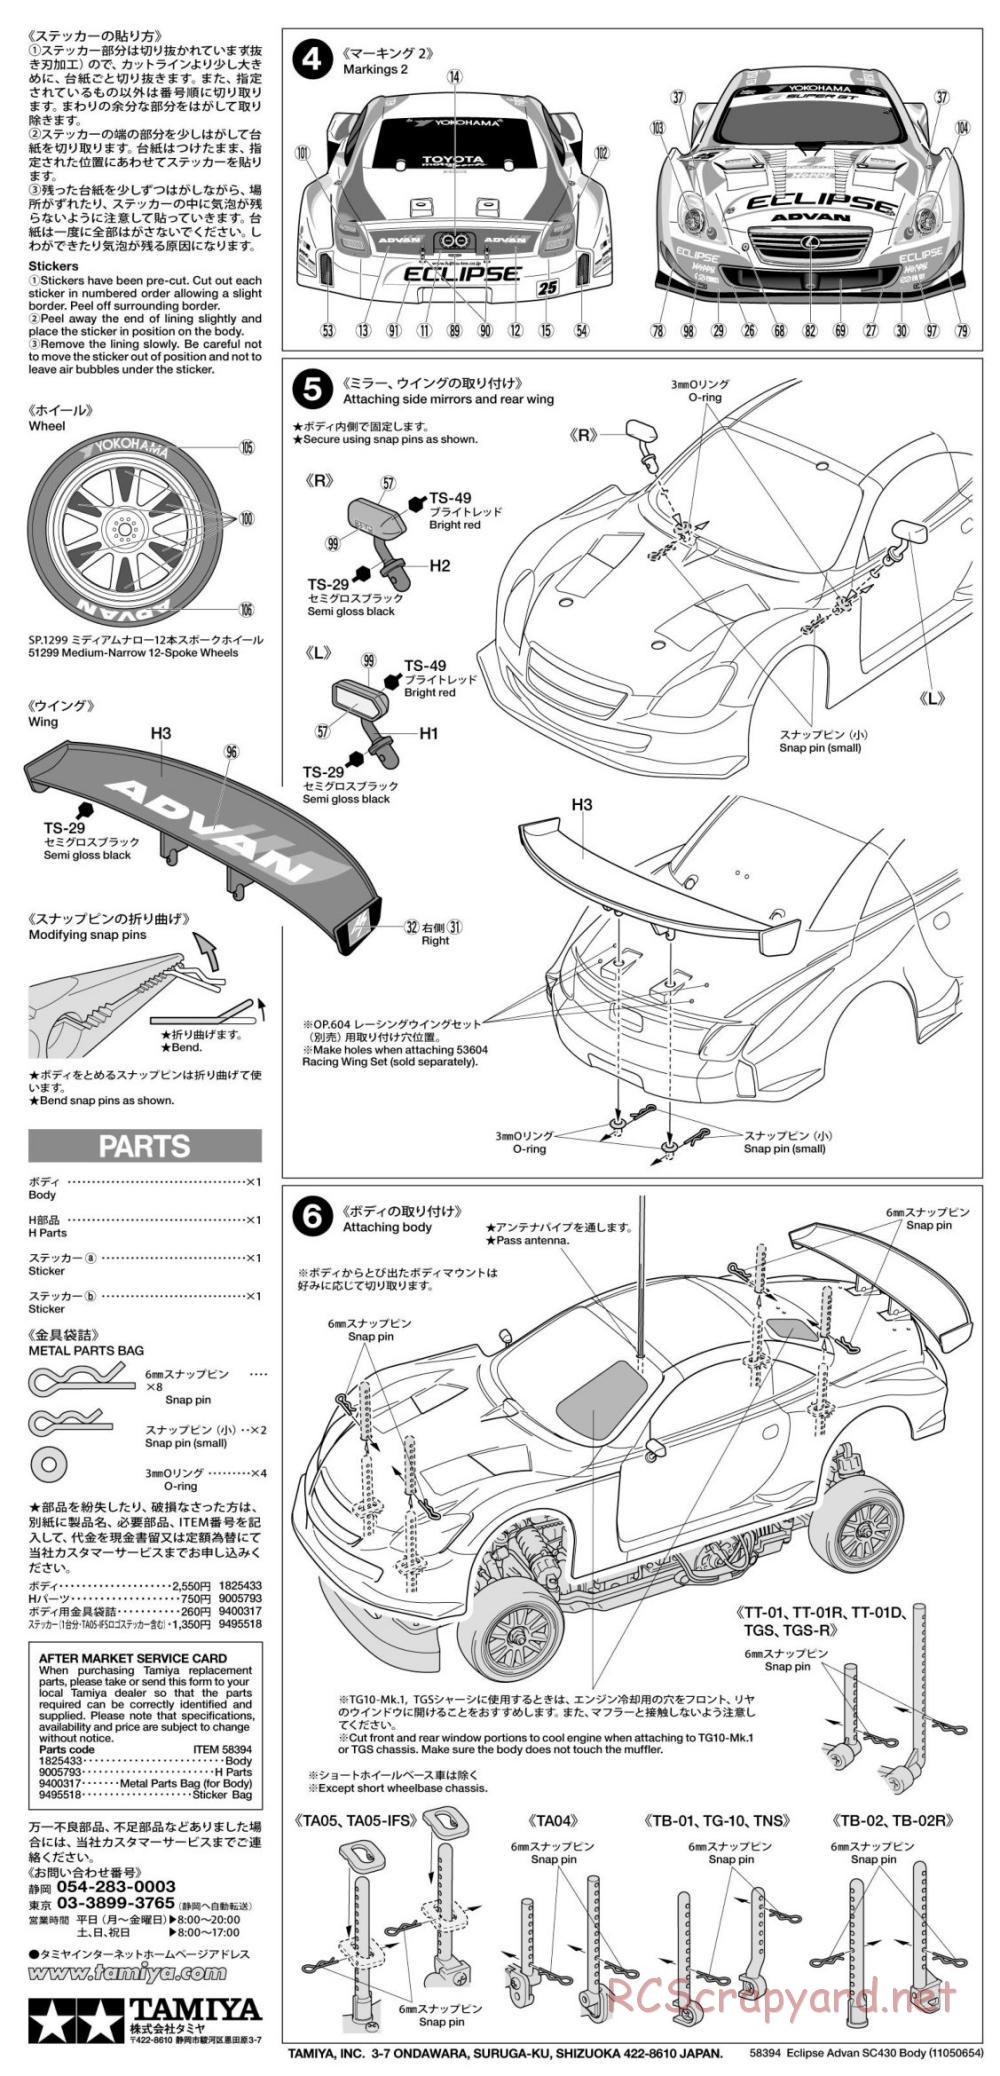 Tamiya - Eclipse Advan SC430 - TA05-IFS Chassis - Body Manual - Page 2